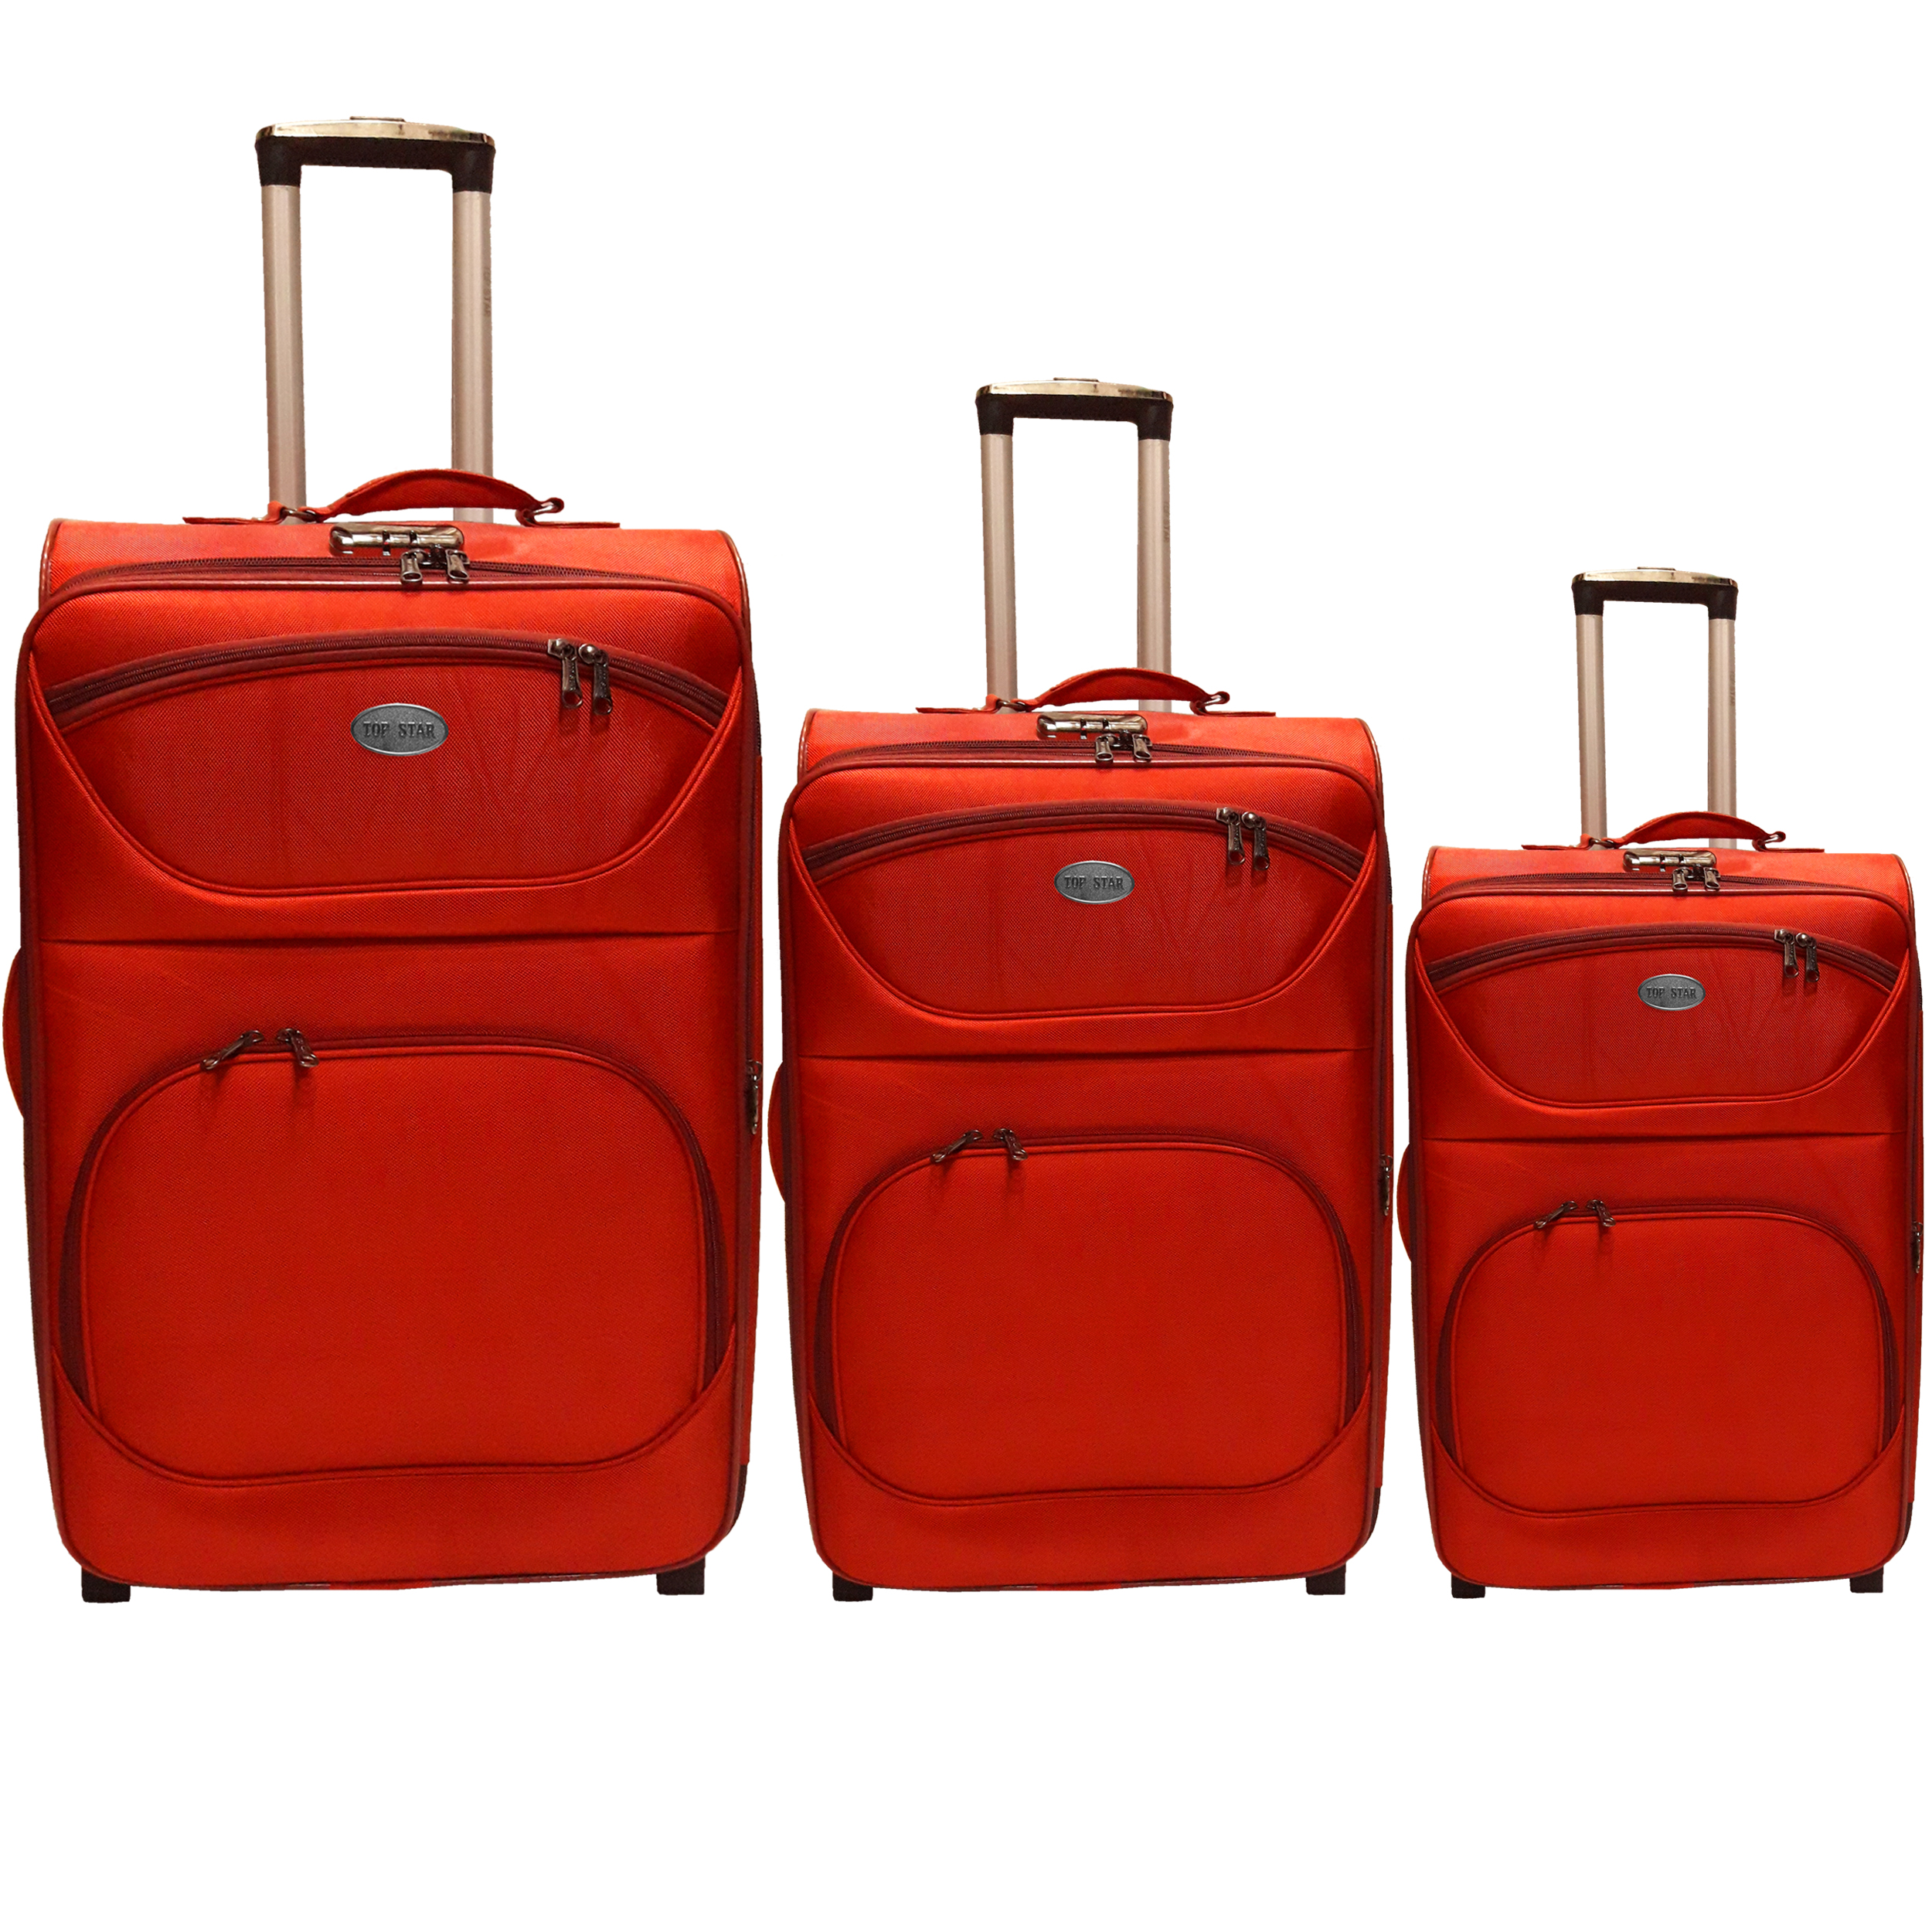 مجموعه سه عددی چمدان تاپ استار مدل newtop2